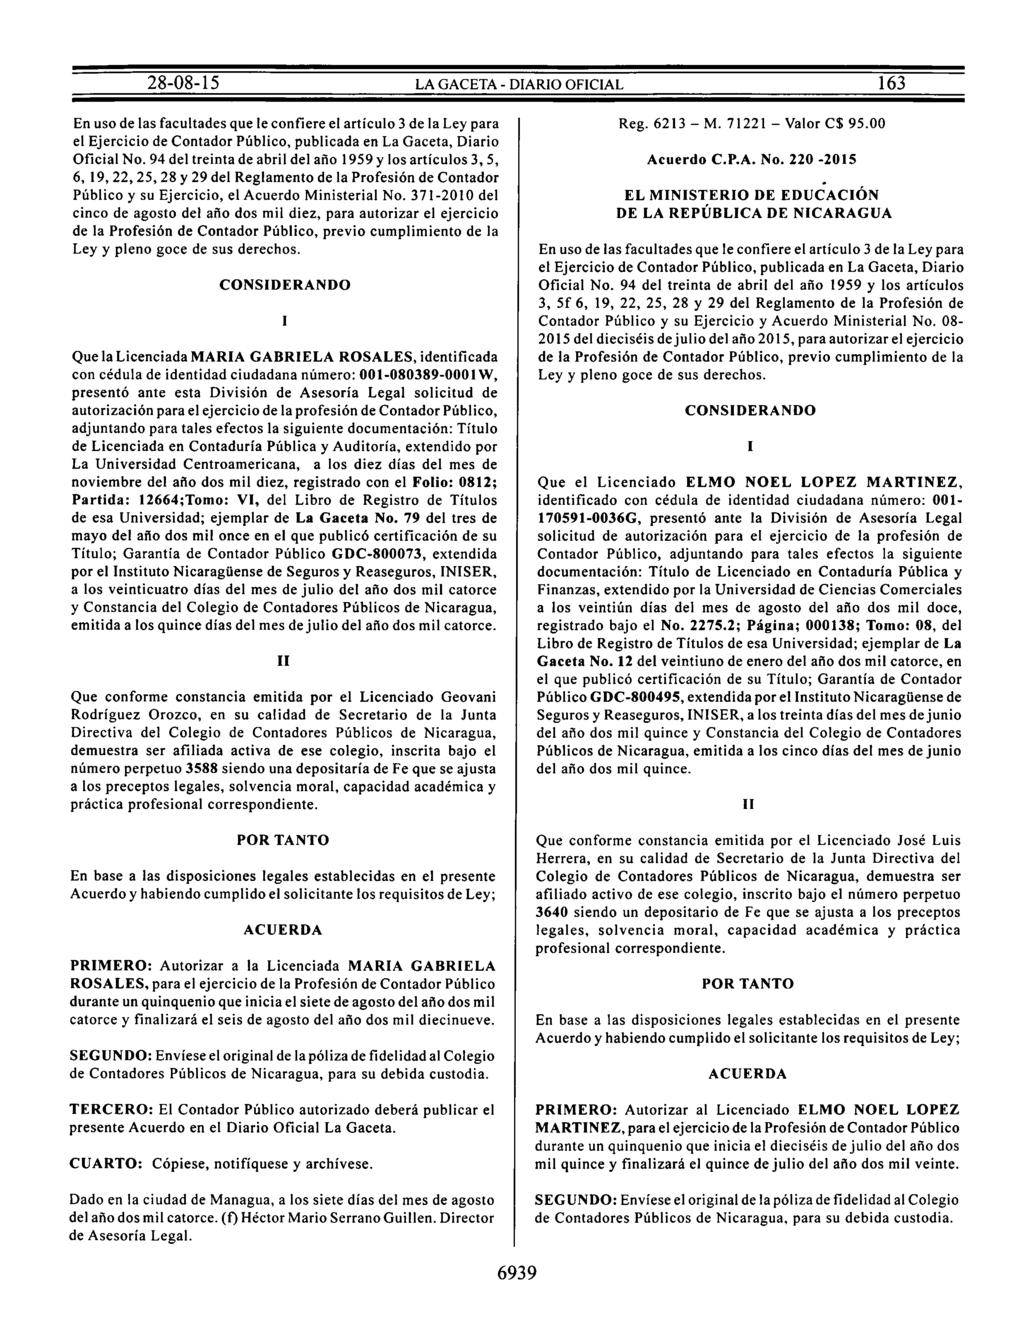 En uso de las facultades que le confiere el artículo 3 de la Ley para el Ejercicio de Contador Público, publicada en La Gaceta, Diario Oficial No.